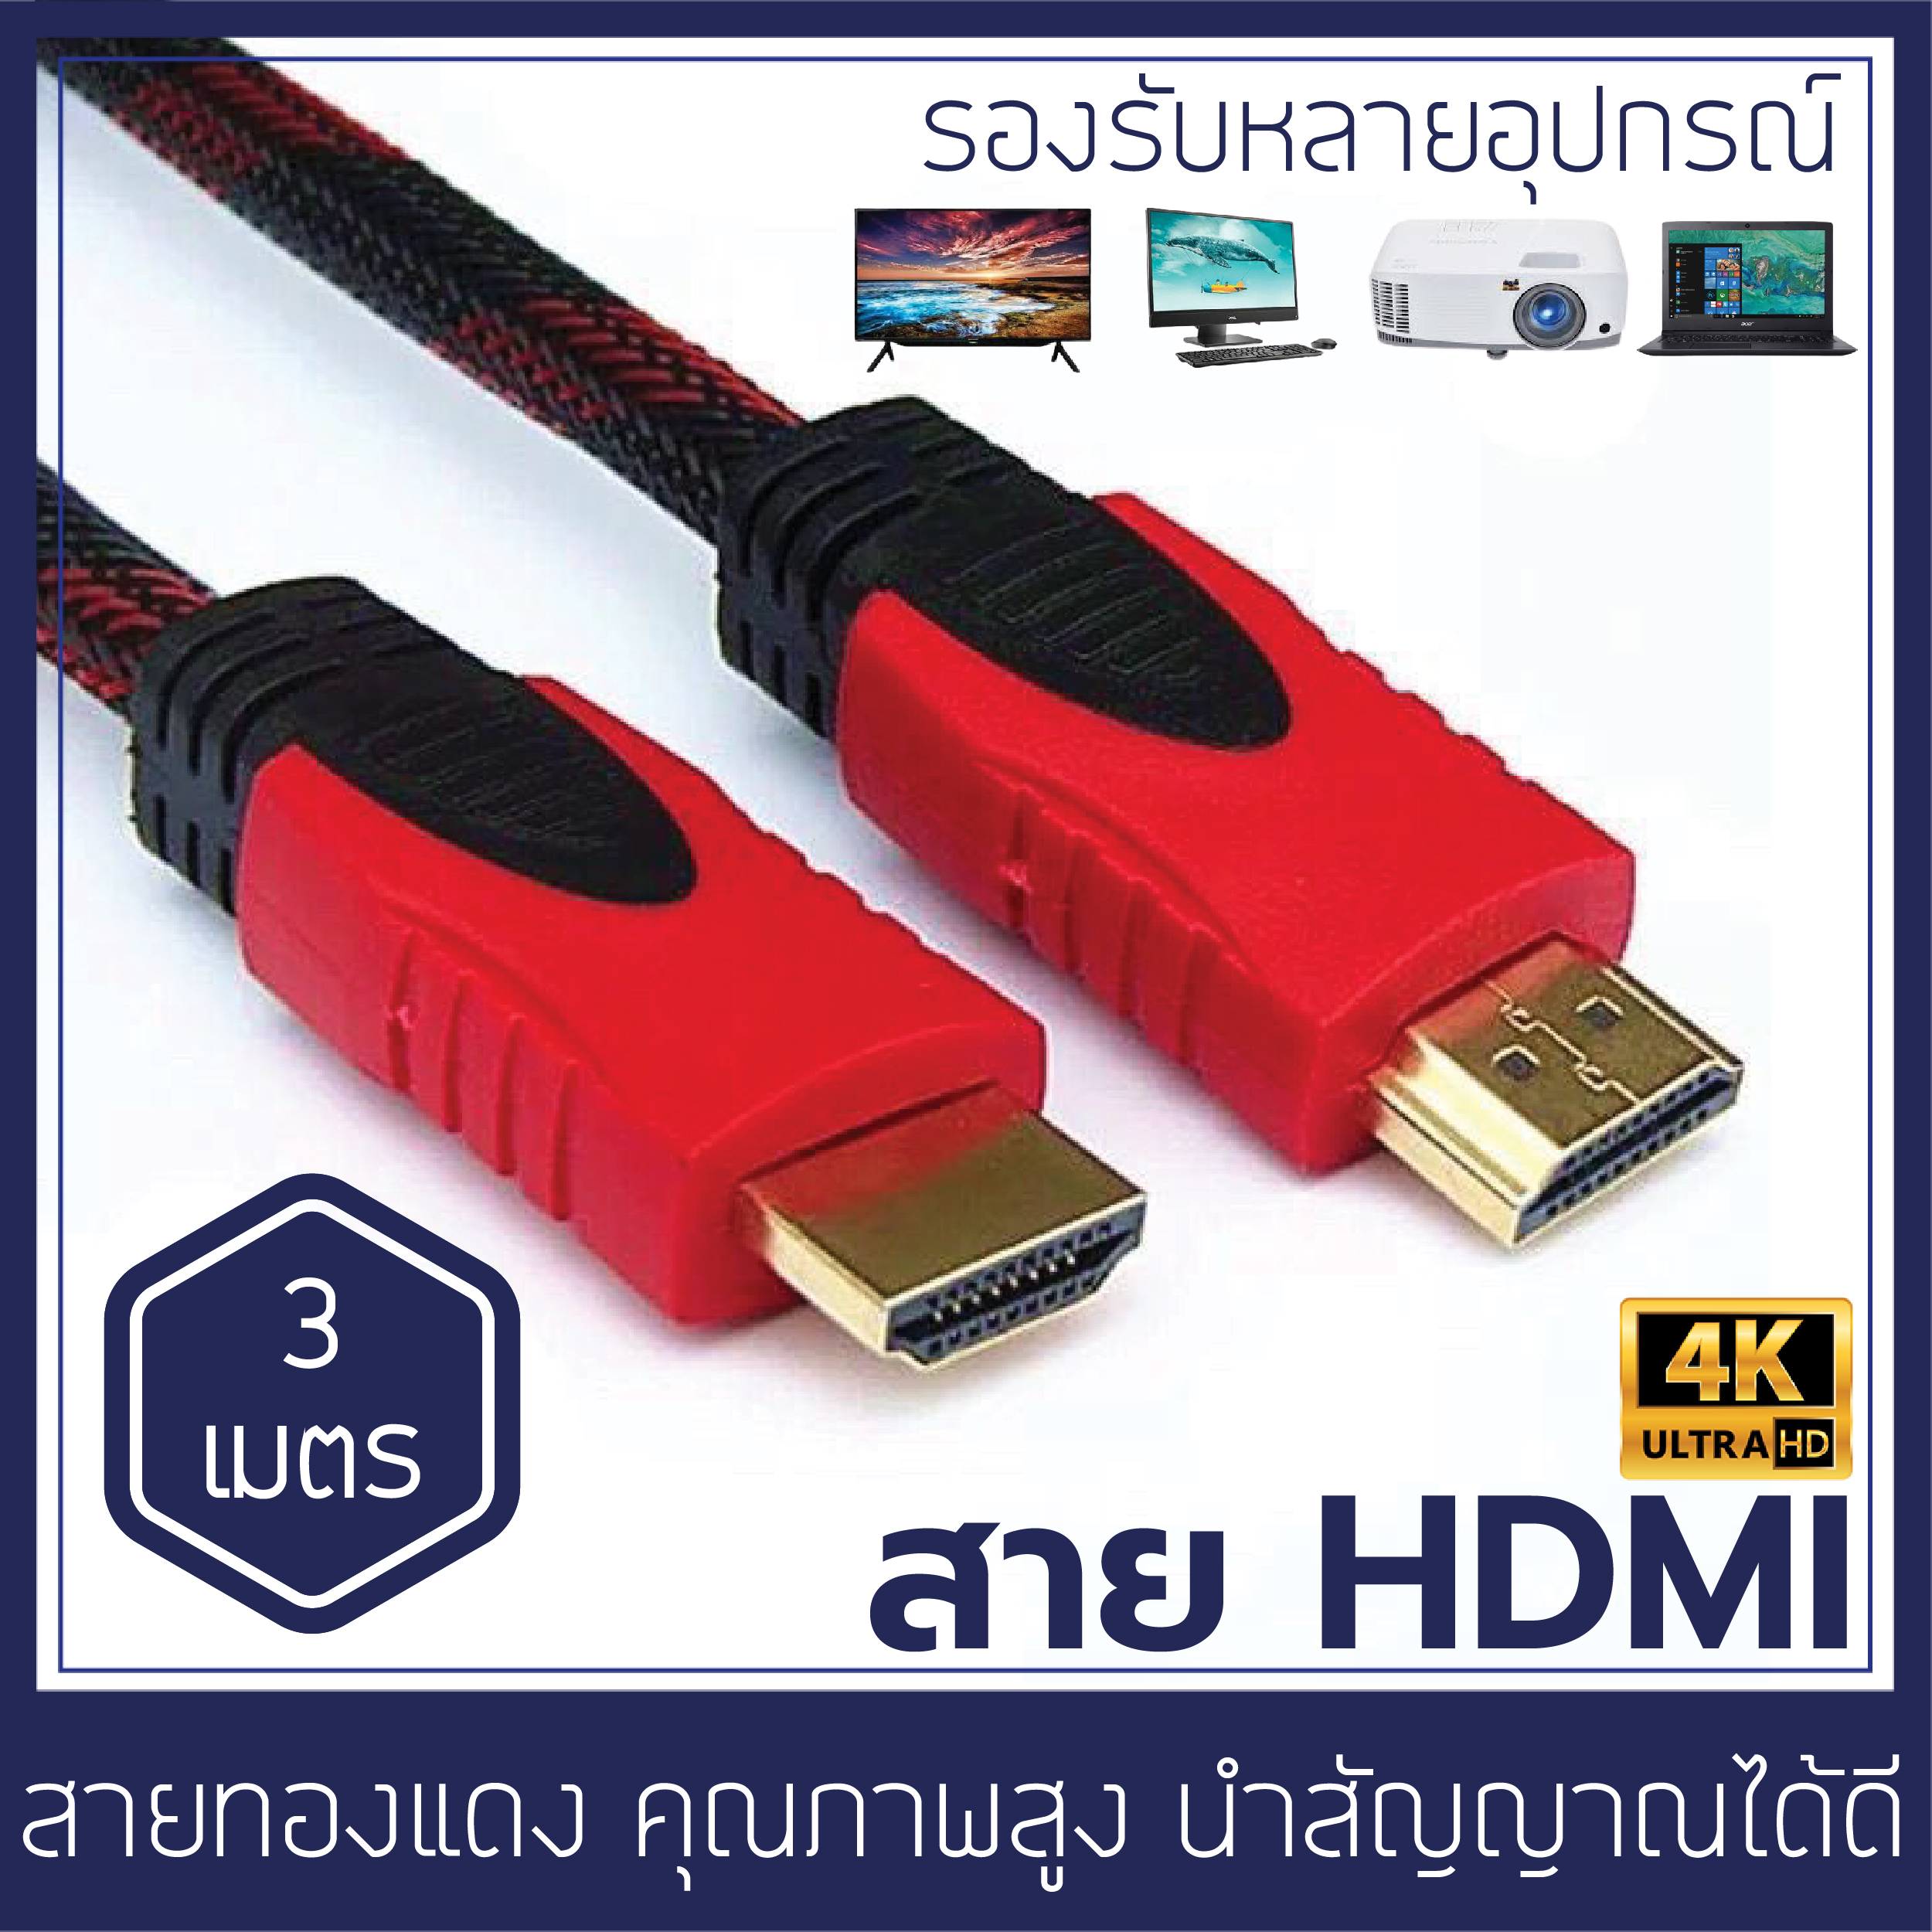 สายHDMI ความยาว 3M 5M 10M 15M รองรับความละเอียด 4K สายทองแดงแท้ ใช้กับทุกอุปกรณ์ที่สามารถเชื่อมต่อ HDMI ได้ TV Notebook Projecter CCB03 High speed hdmi cable